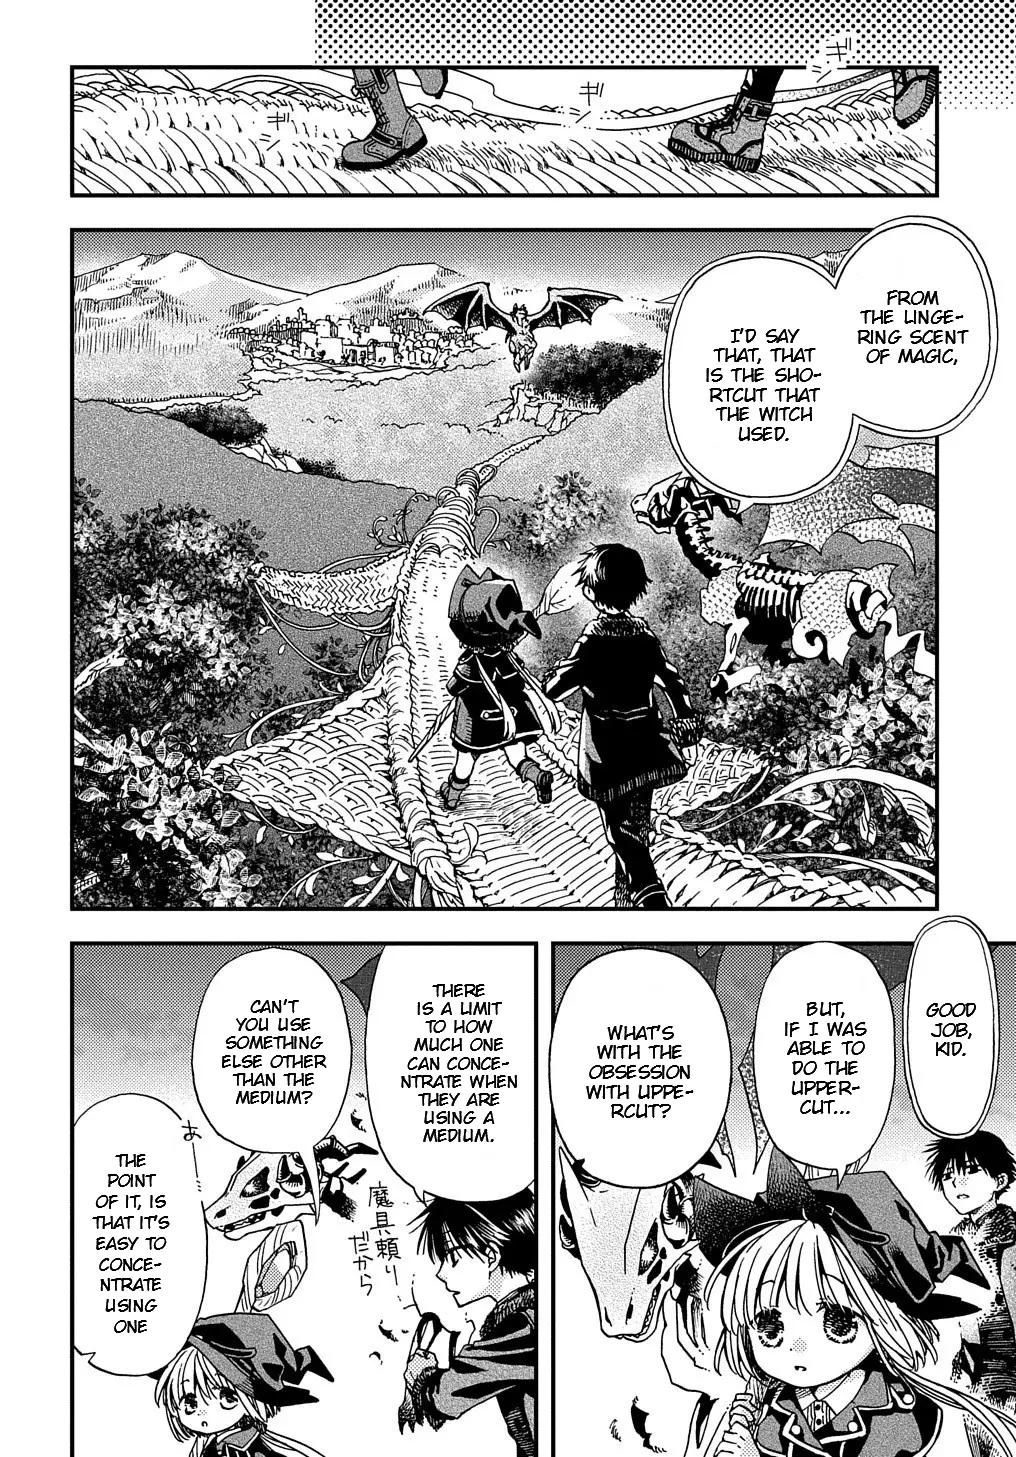 Hone Dragon No Mana Musume - 5 page 18